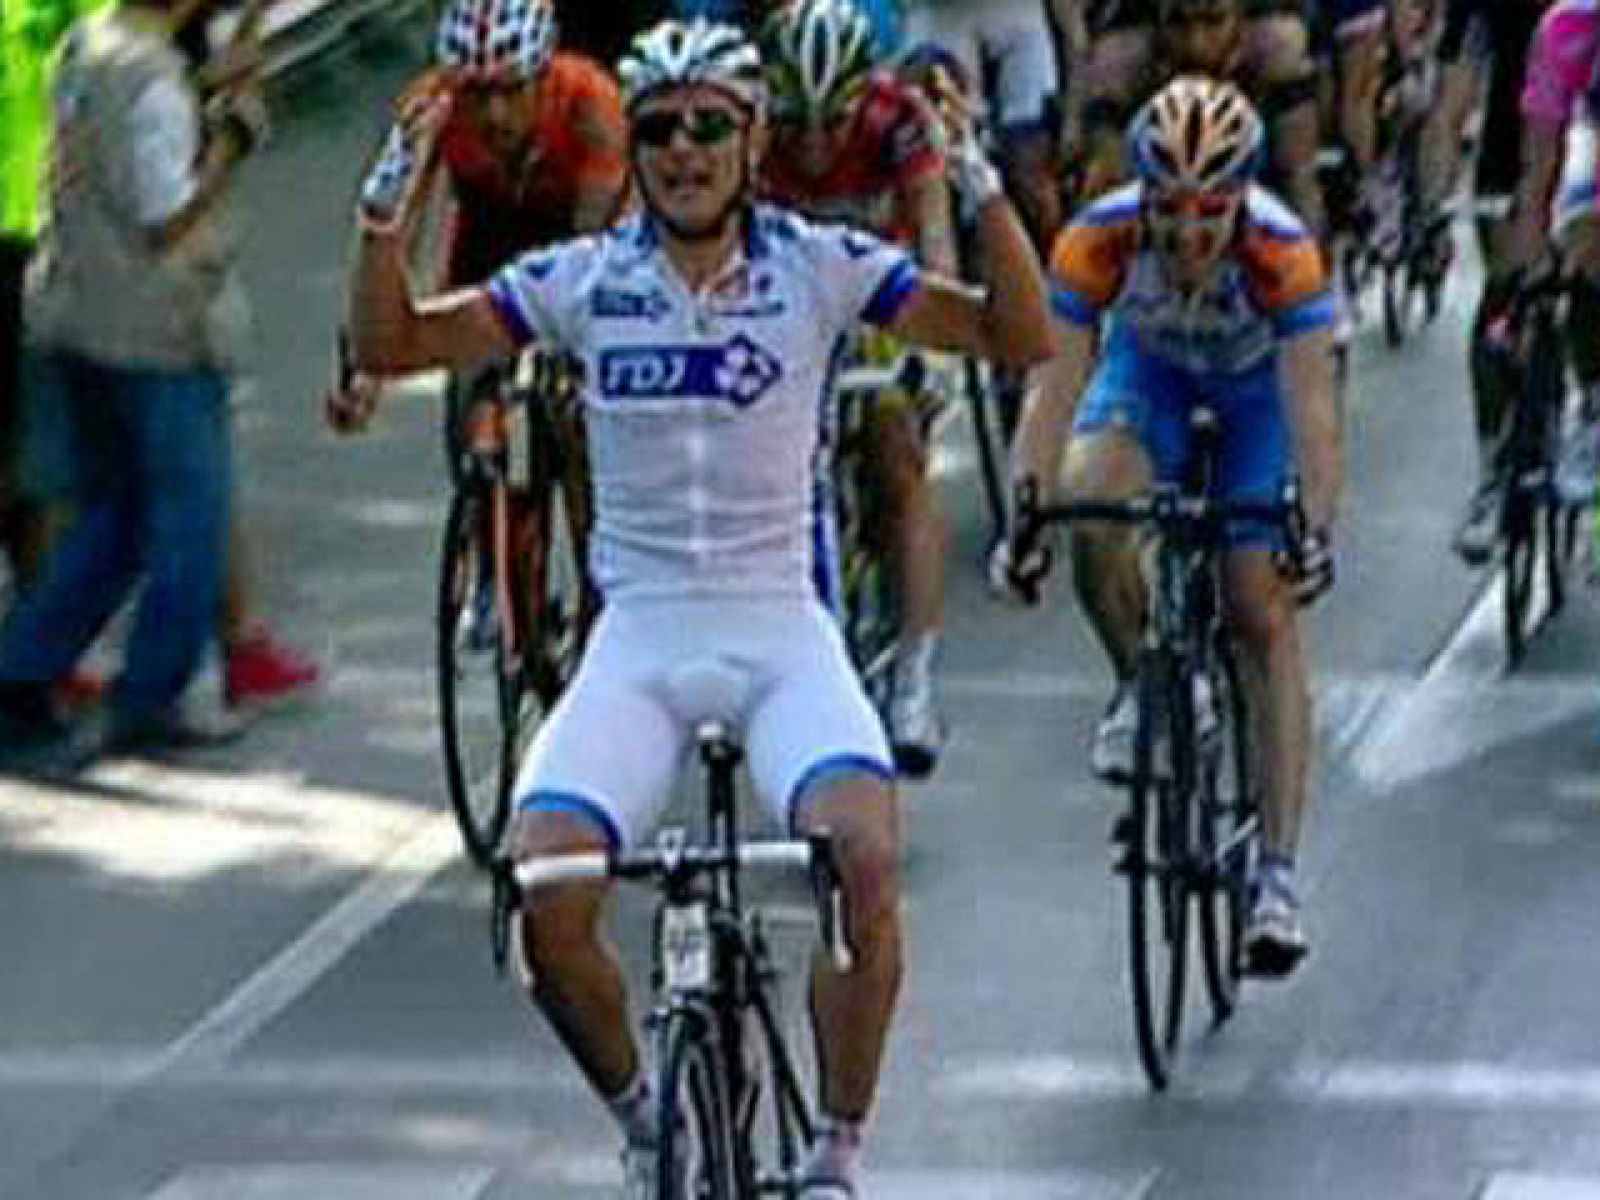 El bielorruso Hutarovich se ha impuesto en la llegada a Alcalá de Guadaíra en el final de la primera etapa en línea de la Vuelta a España, llegando por delante de Cavendish, que mantiene el maillot rojo de líder.